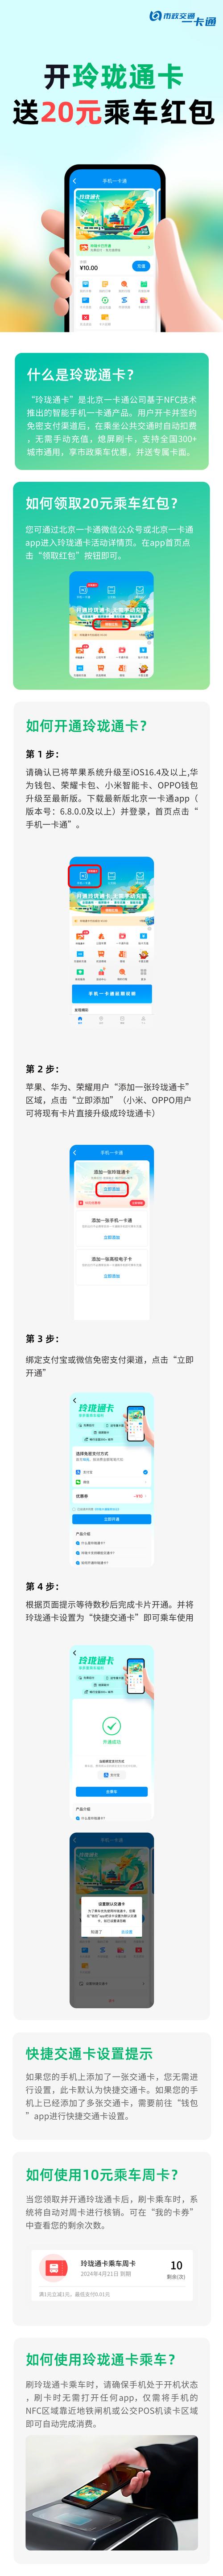 已有交通卡签约:北京一卡通app>首页>手机一卡通,选择需要开通的北京